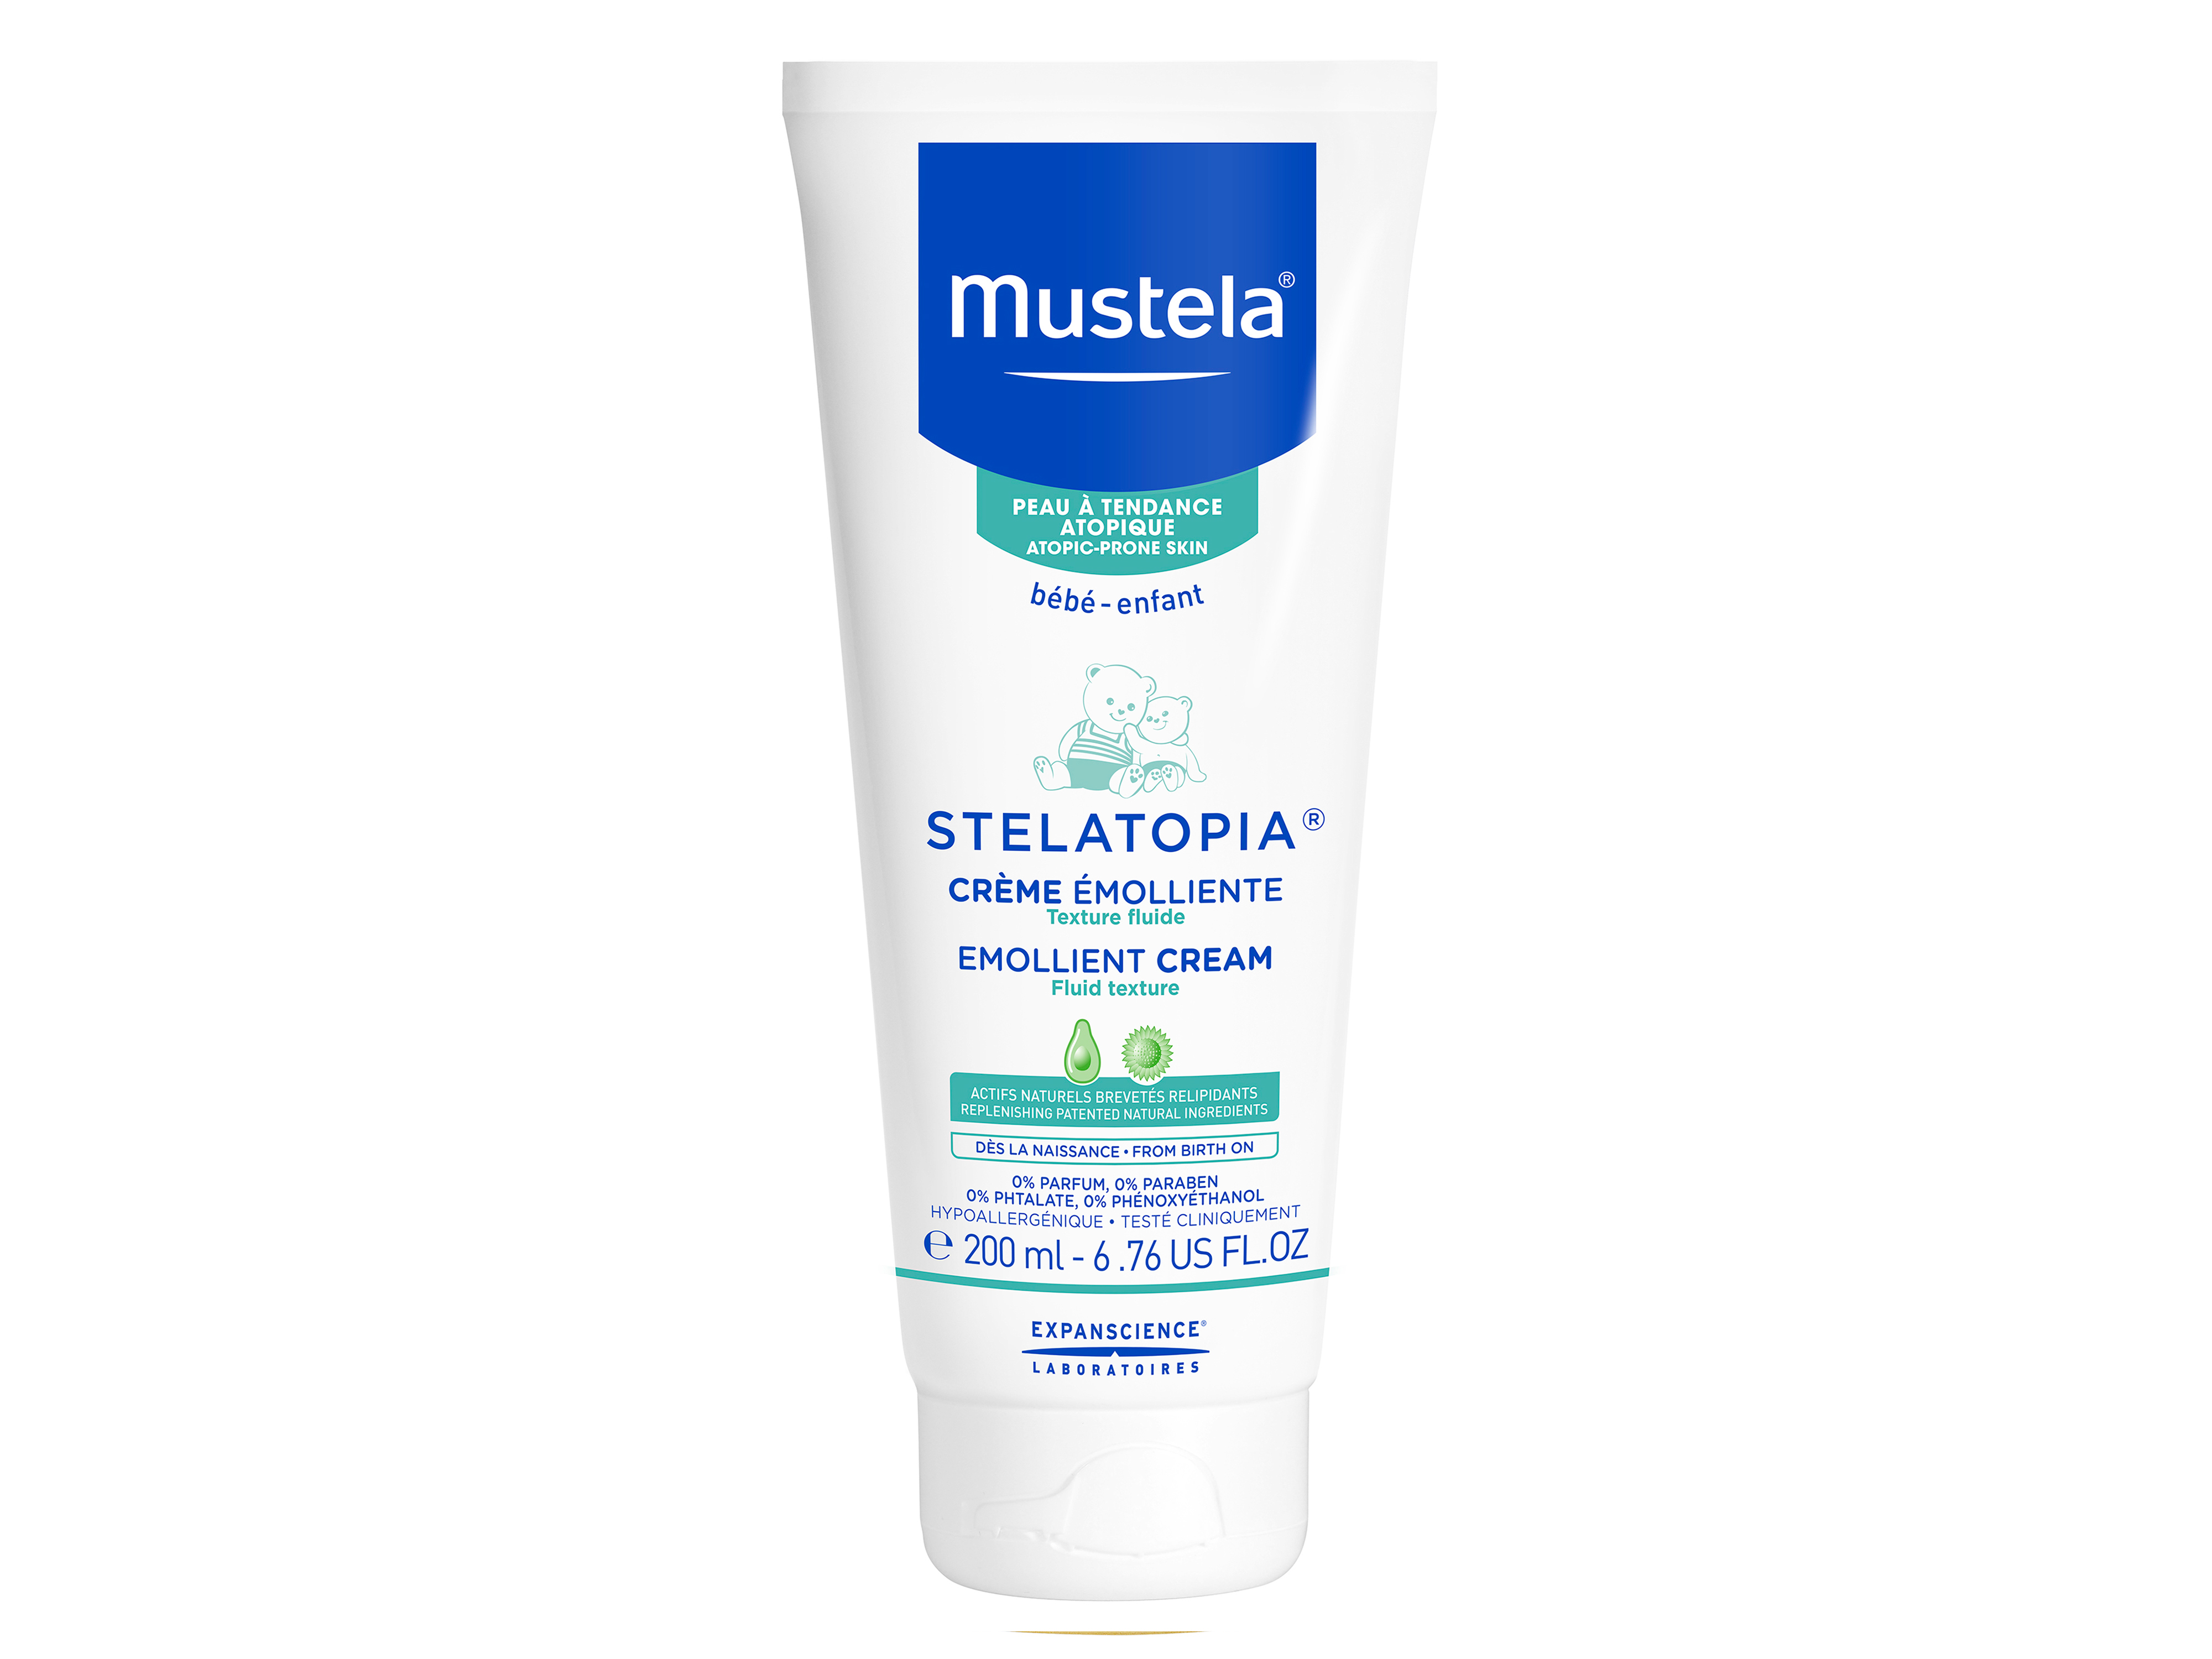 Mustela Stelatopia Emollient Cream, 200 ml